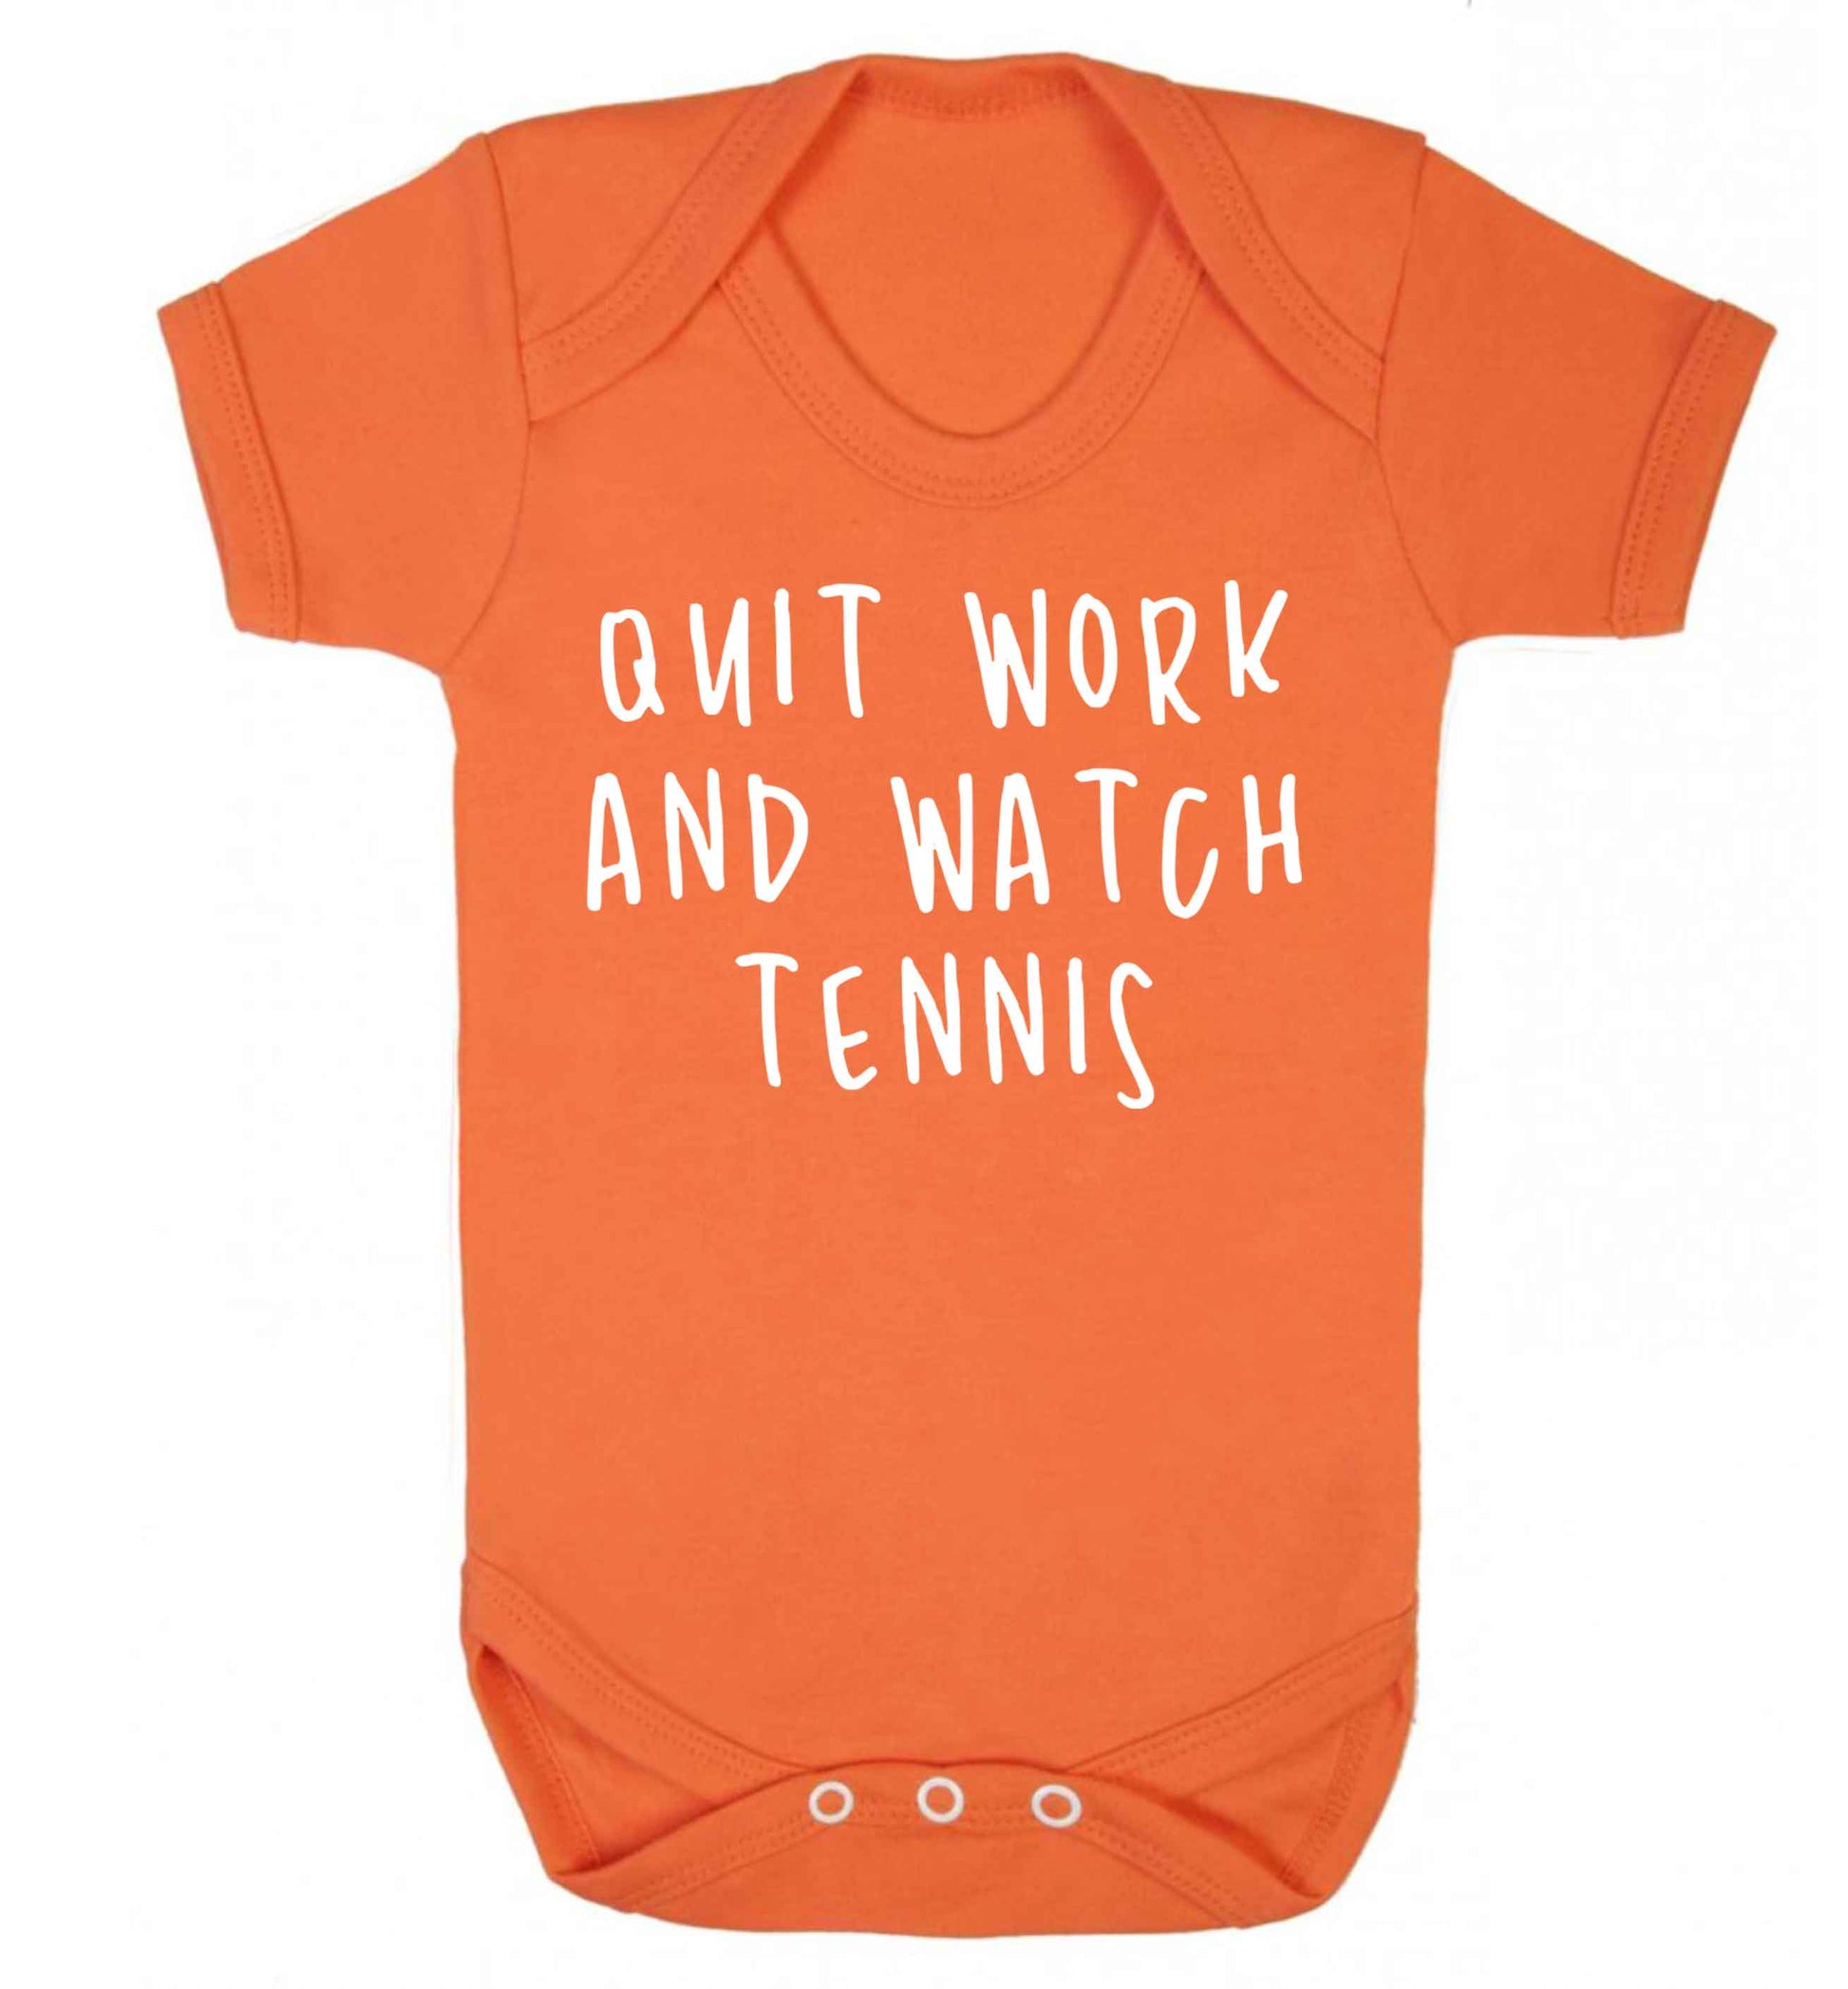 Quit work and watch tennis Baby Vest orange 18-24 months